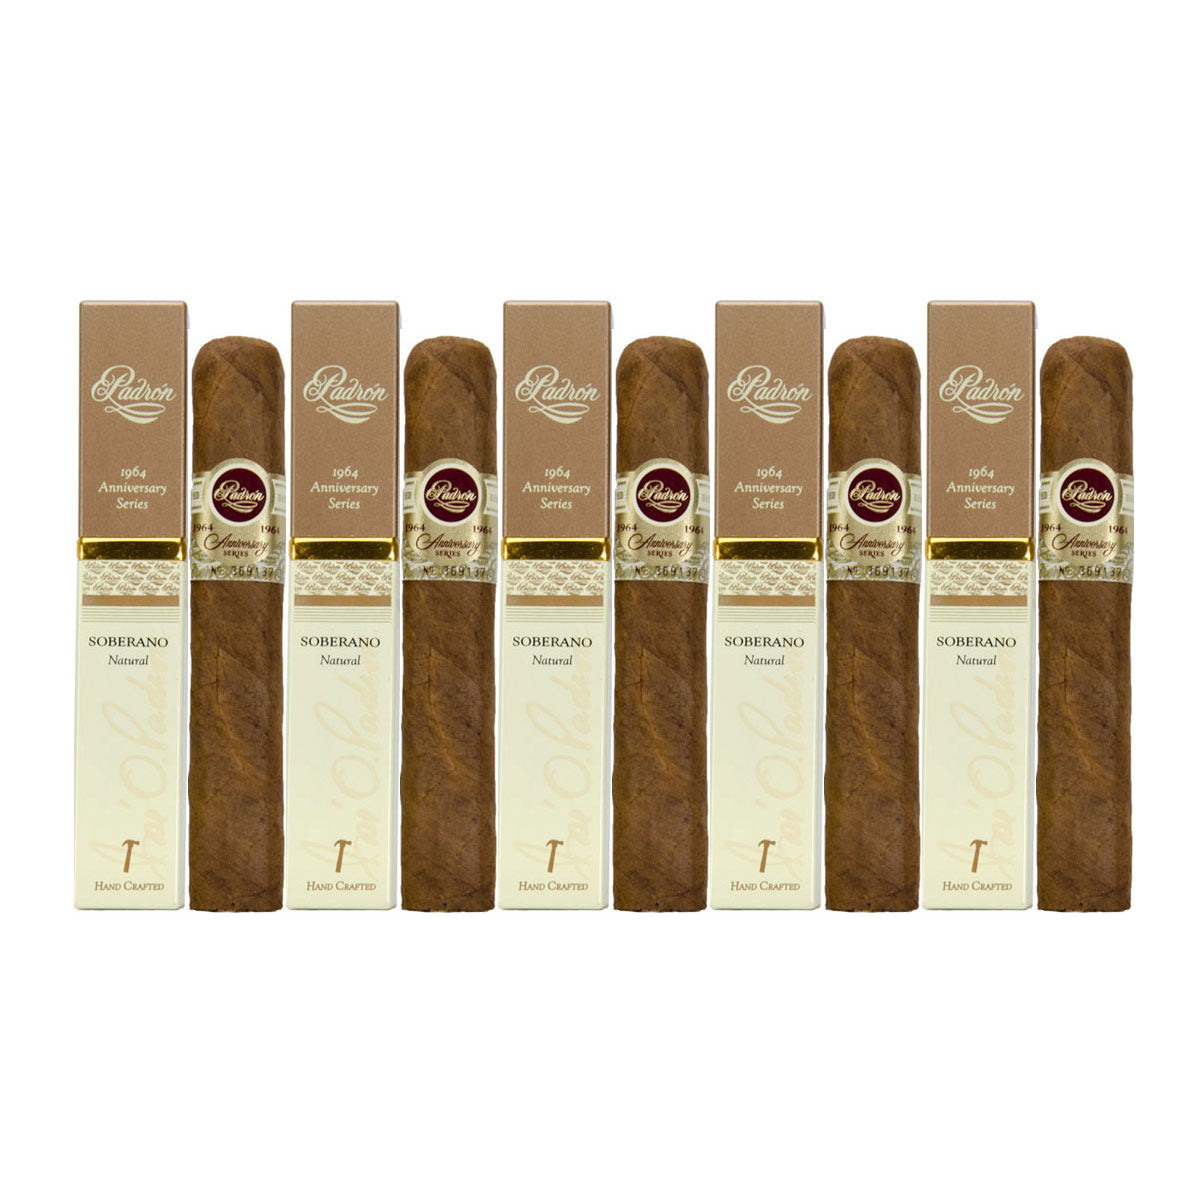 Padron 1964 Anniversary Series Soberano Natural 5 x 52 Robusto Tubo Cigars 5 Pack